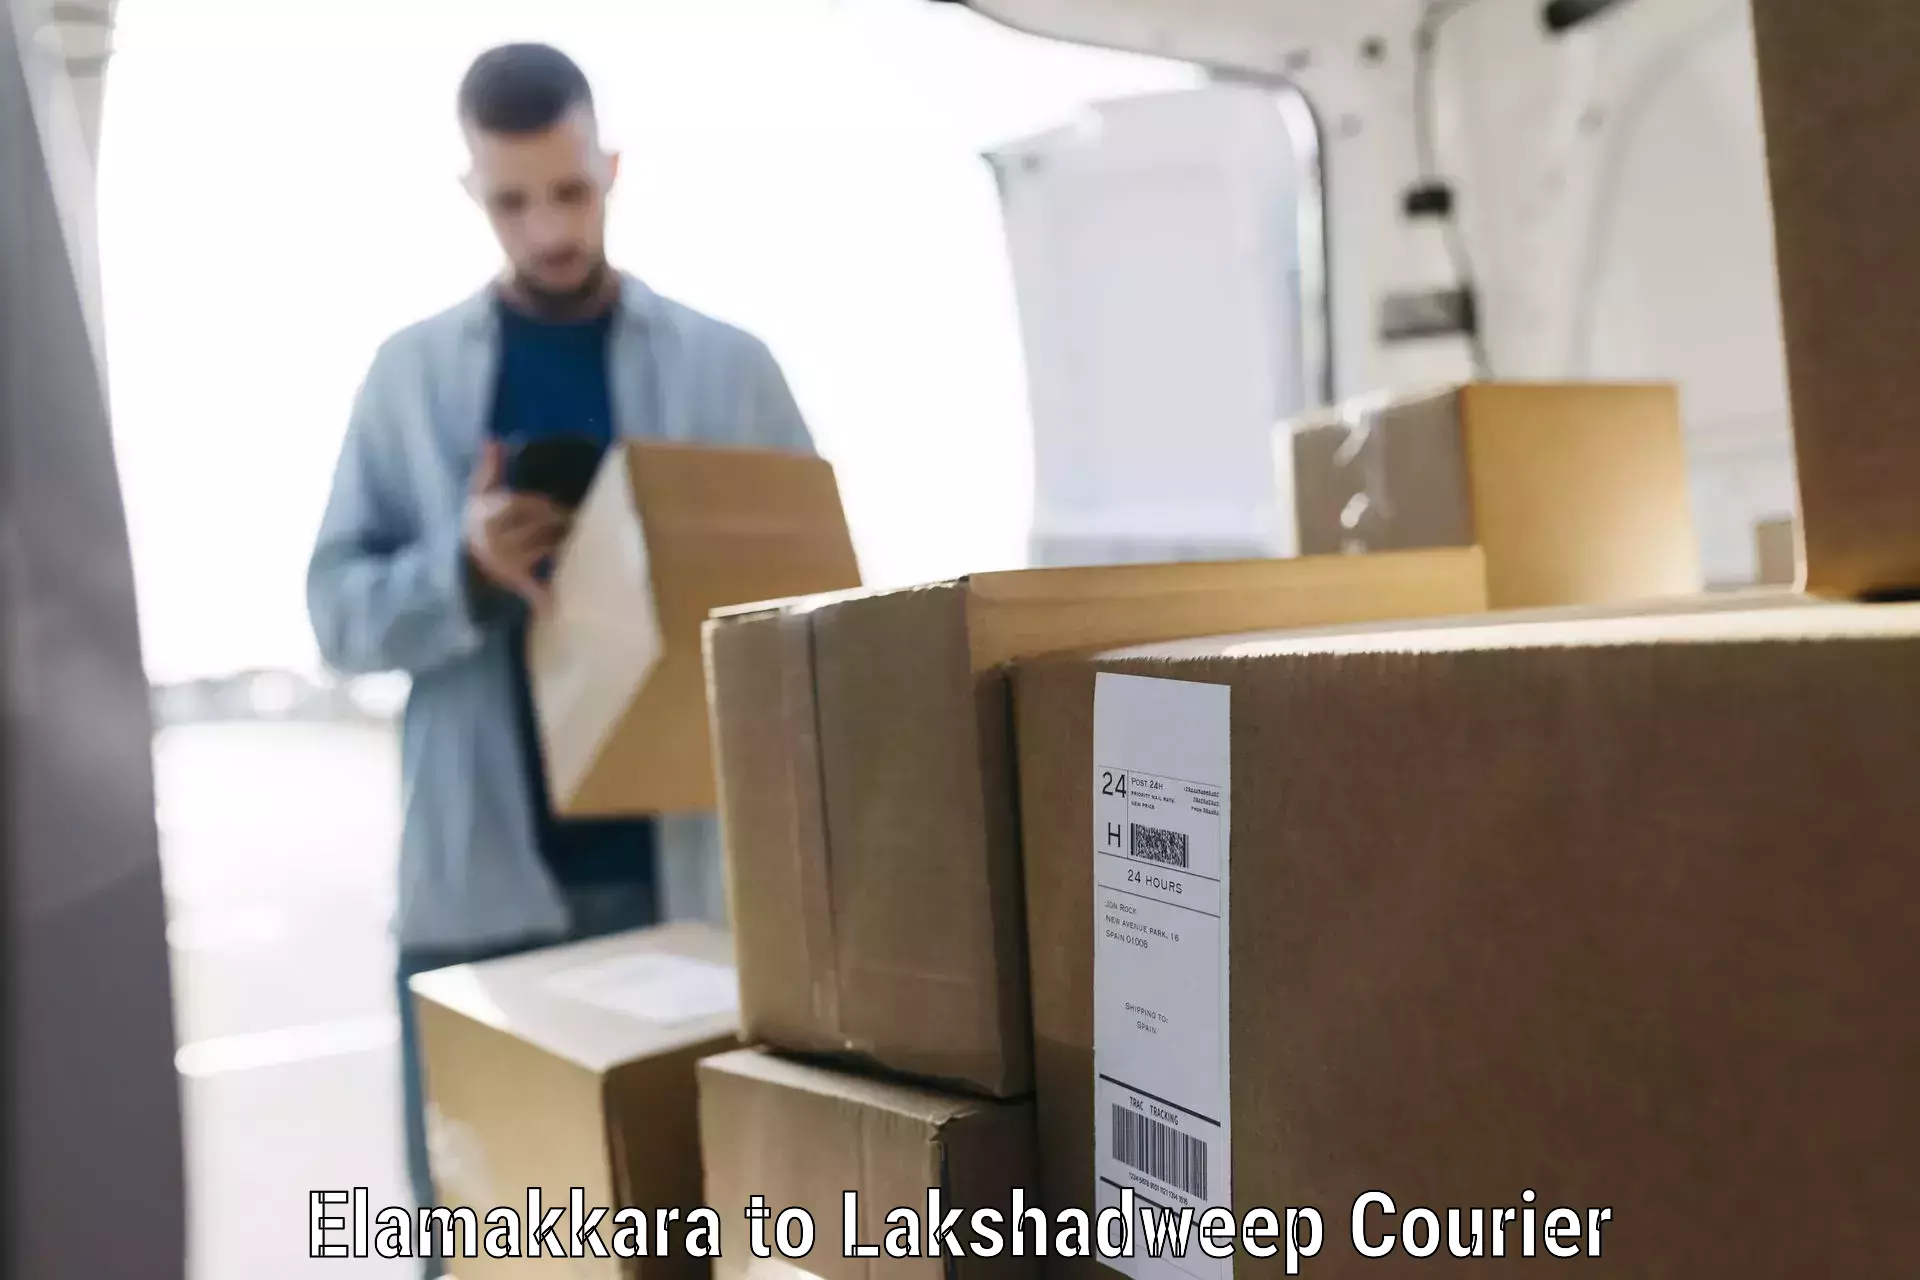 Luggage transport company Elamakkara to Lakshadweep